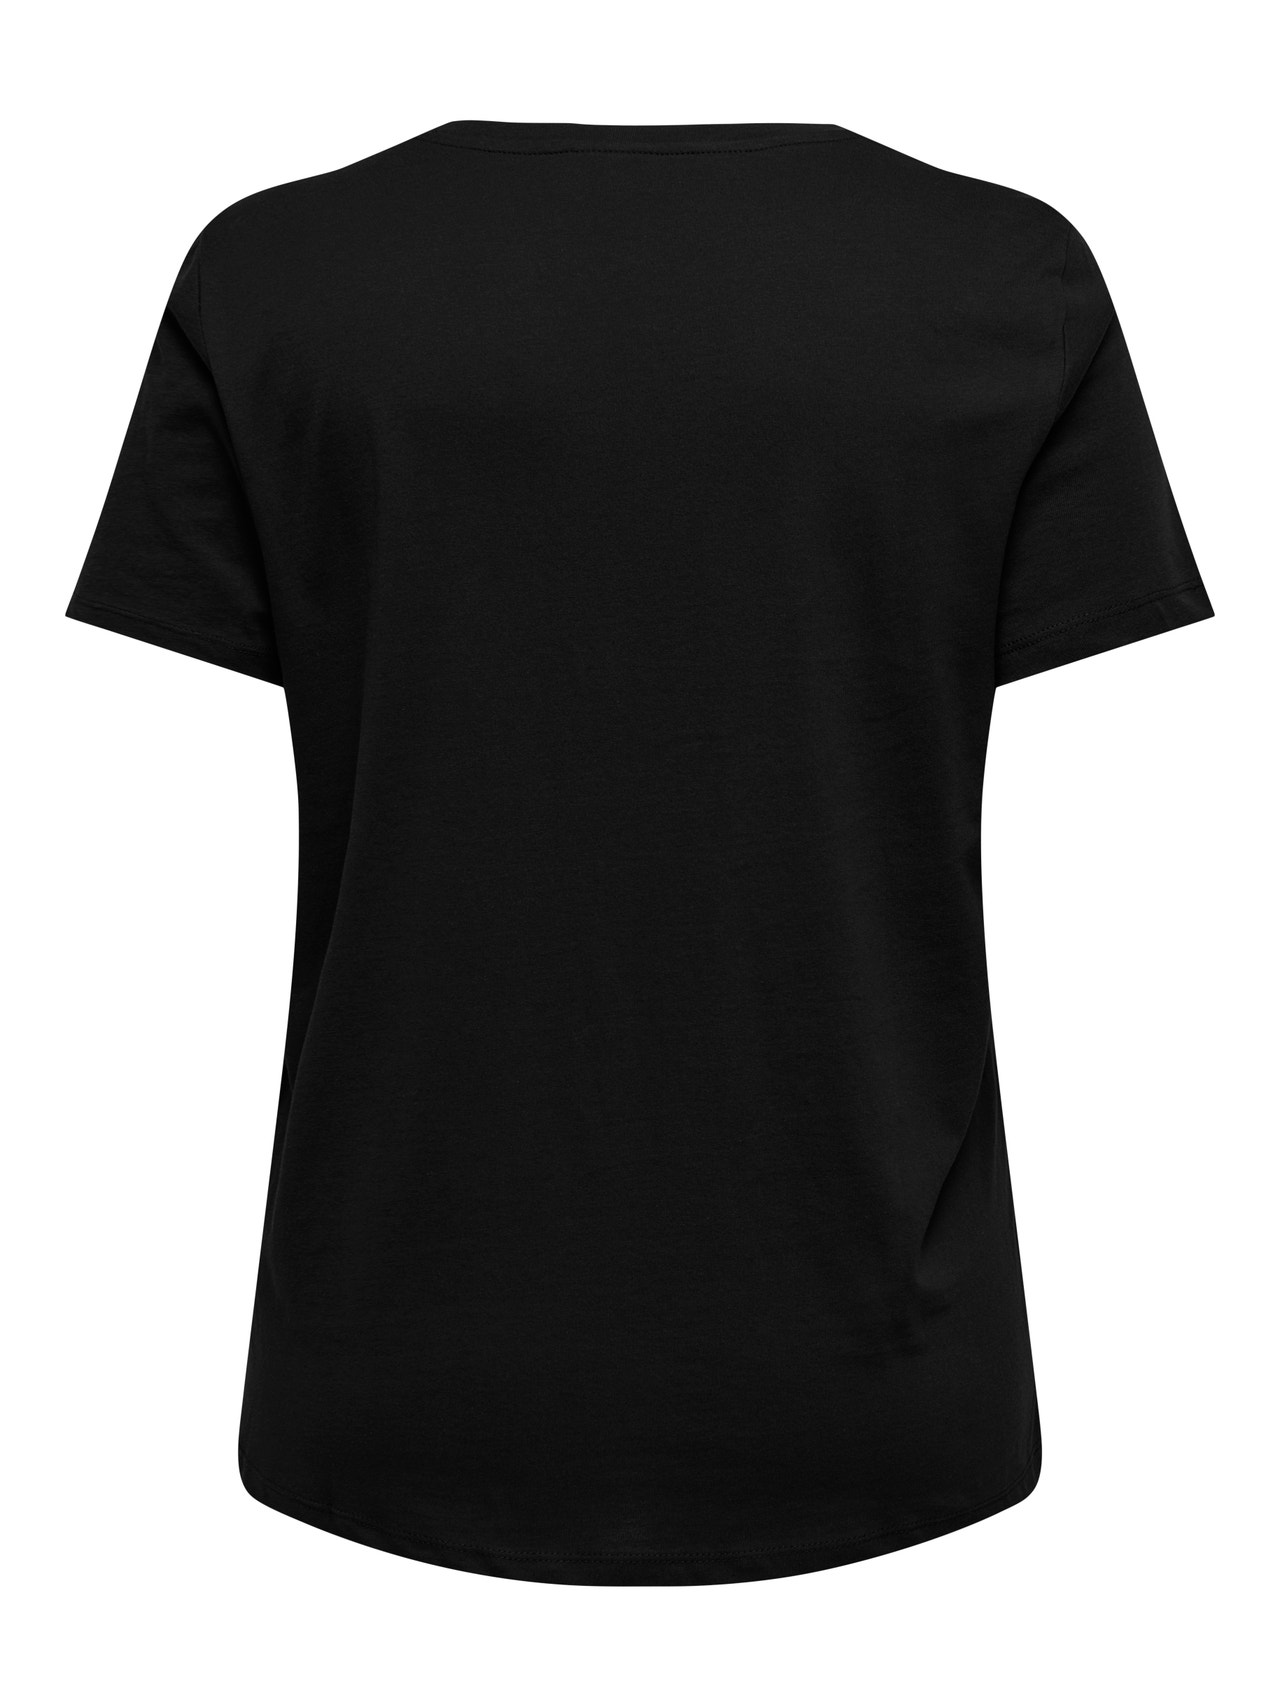 ONLY Curvy printed t-shirt -Black - 15306518